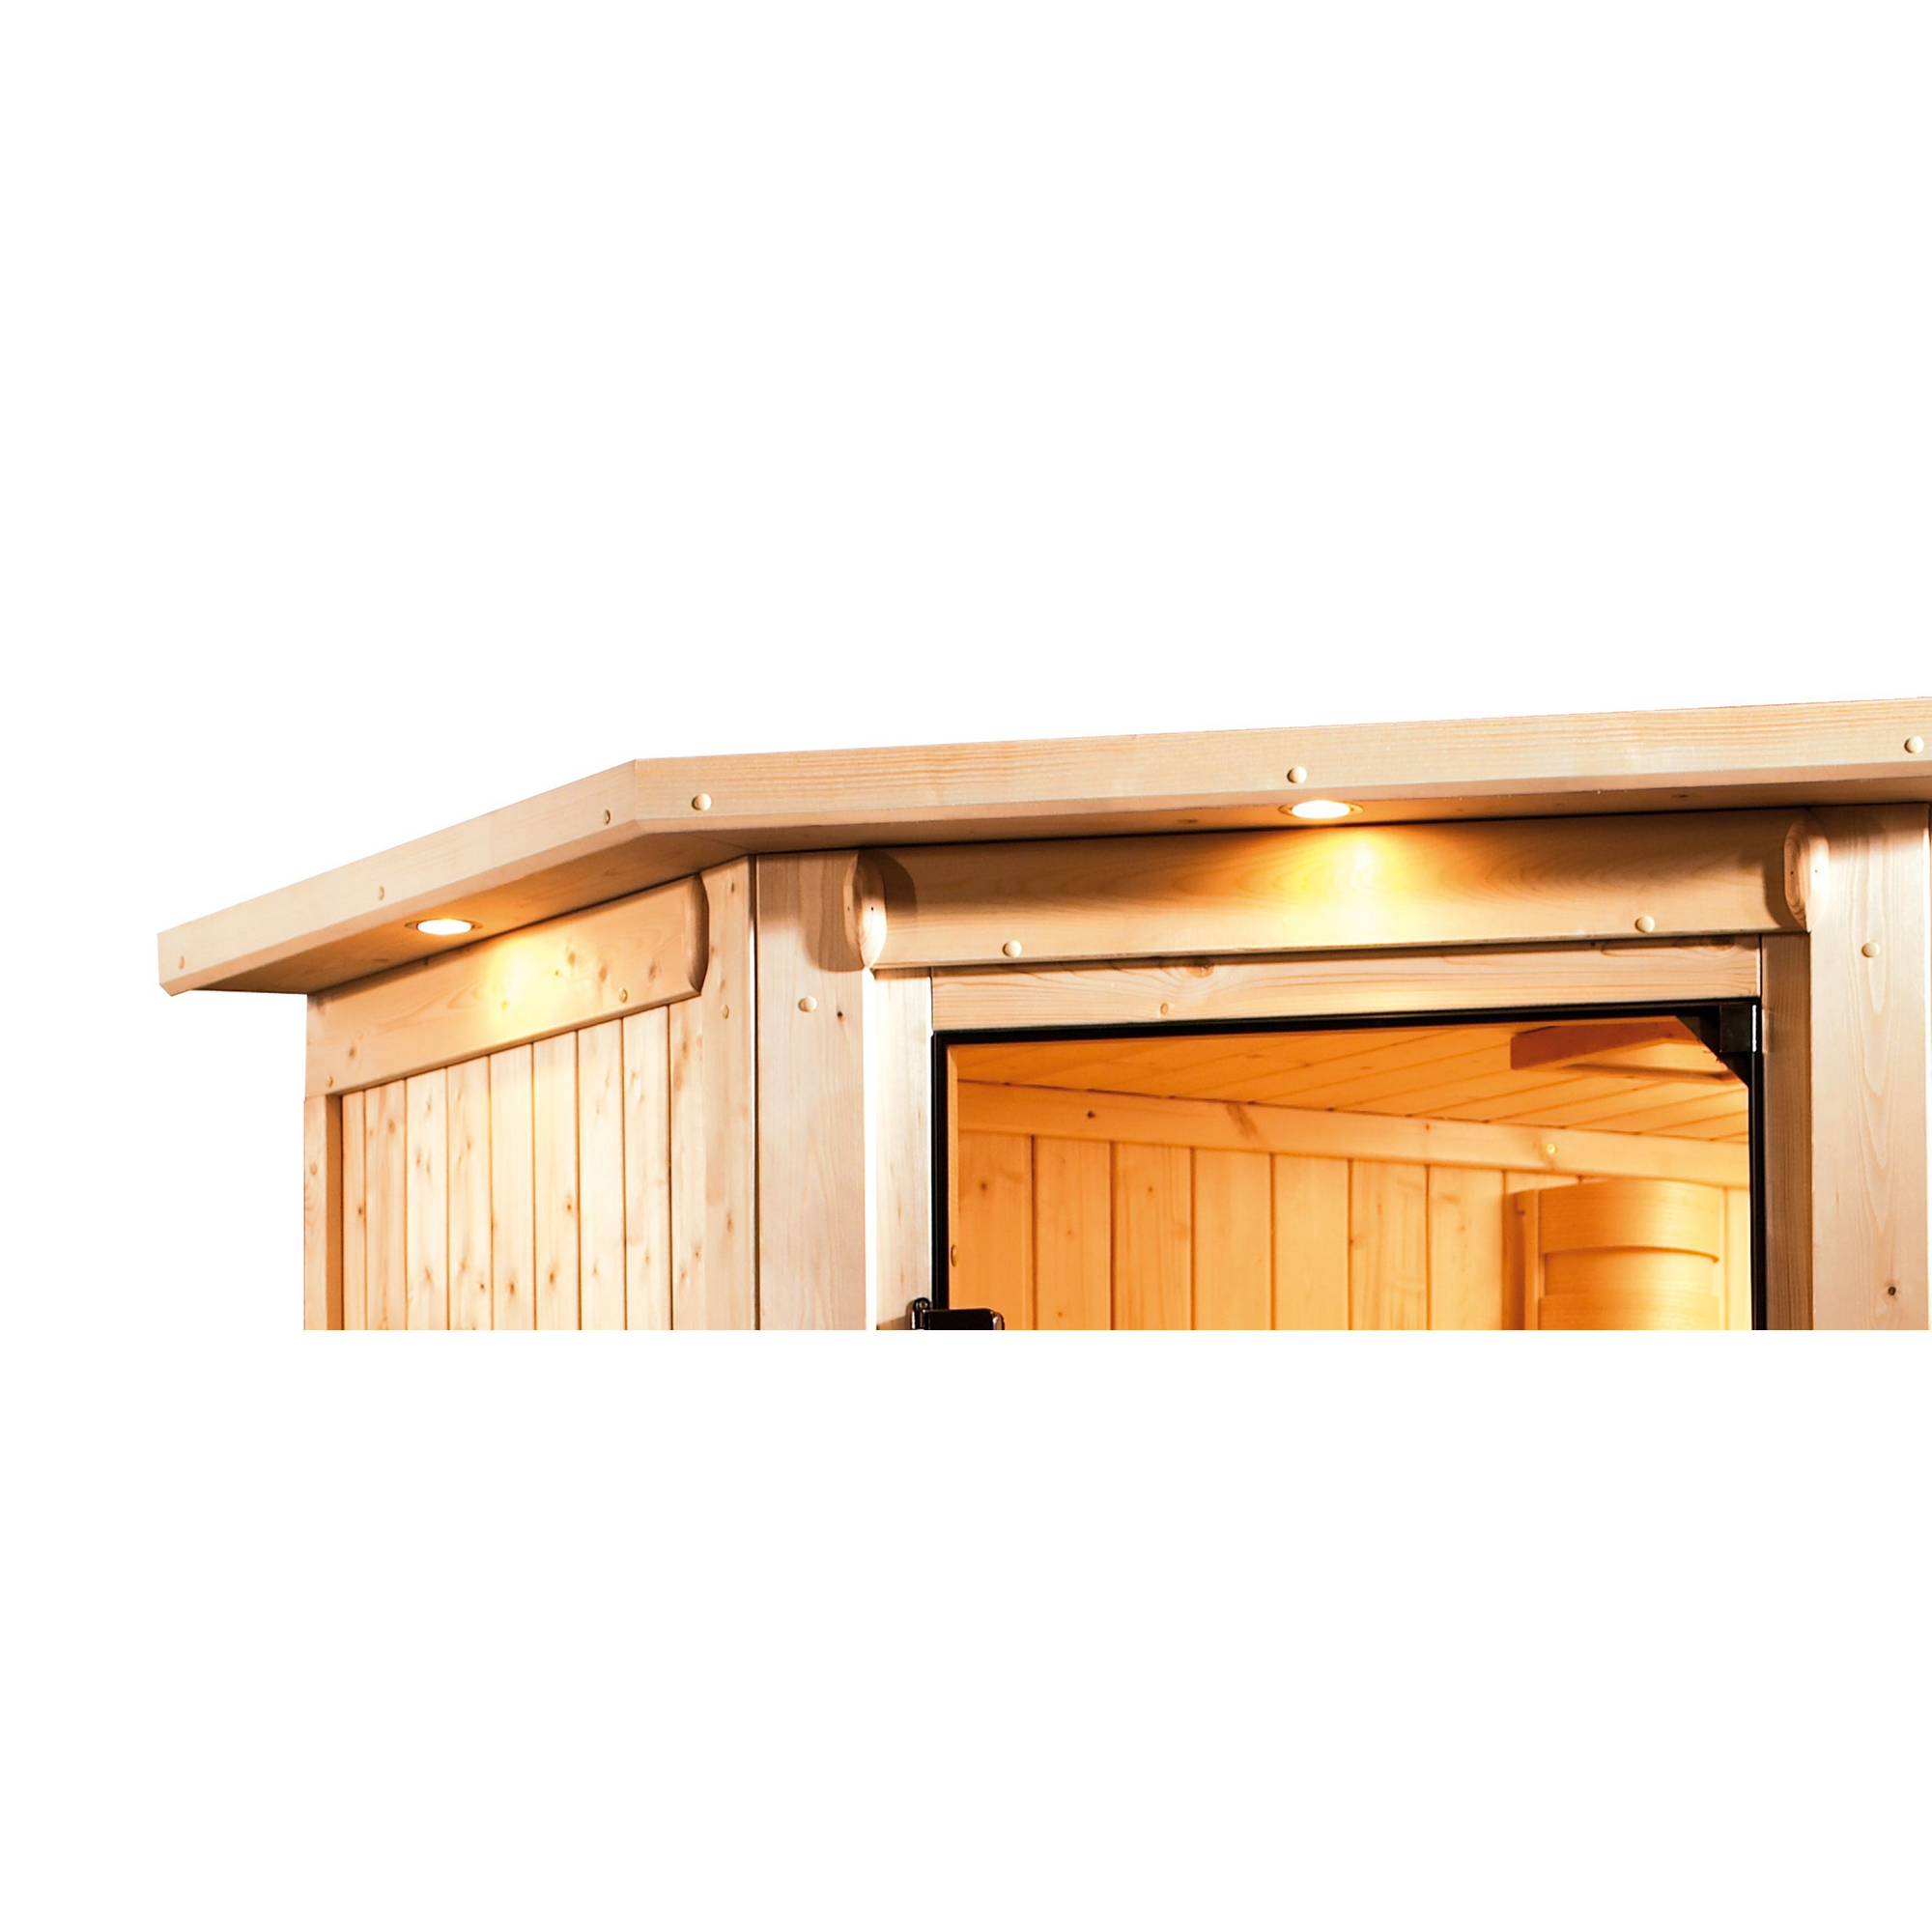 Massivholzsauna 'Esperanza' naturbelassen mit Kranz und bronzierter Tür 9 kW Bio-Ofen externe Steuerung 223 x 209 x 191 cm + product picture